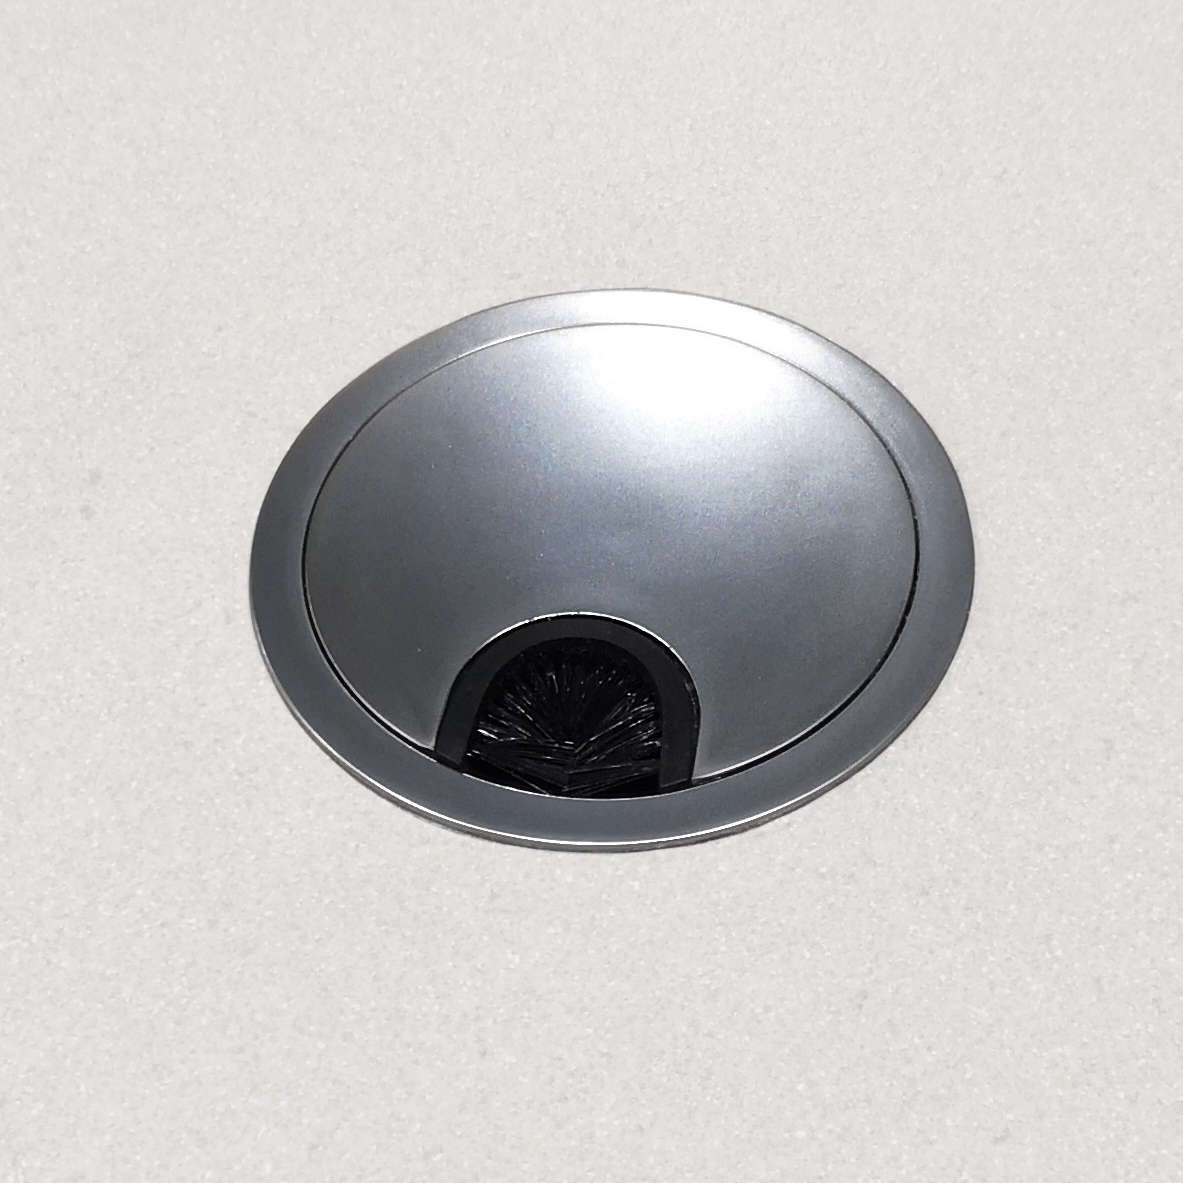 Dukin Outdoorküche Kabel- oder Gasschlauchrosette (Ø60 mm)